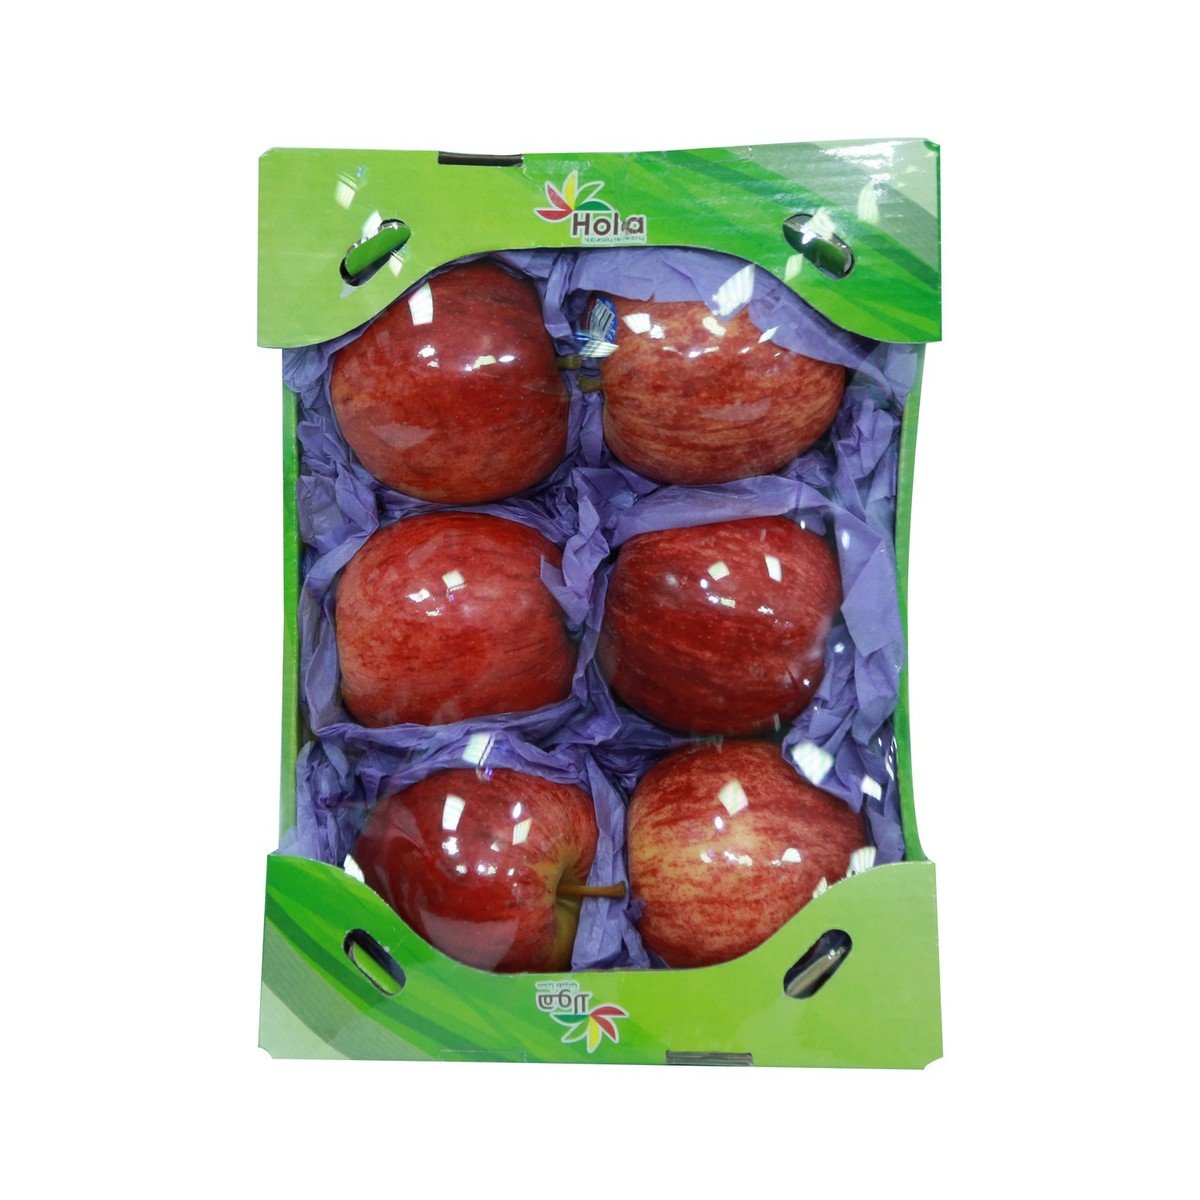 اشتري قم بشراء تفاح رويال جالا صندوق صغير ١ كجم تقريبا Online at Best Price من الموقع - من لولو هايبر ماركت Apples في السعودية